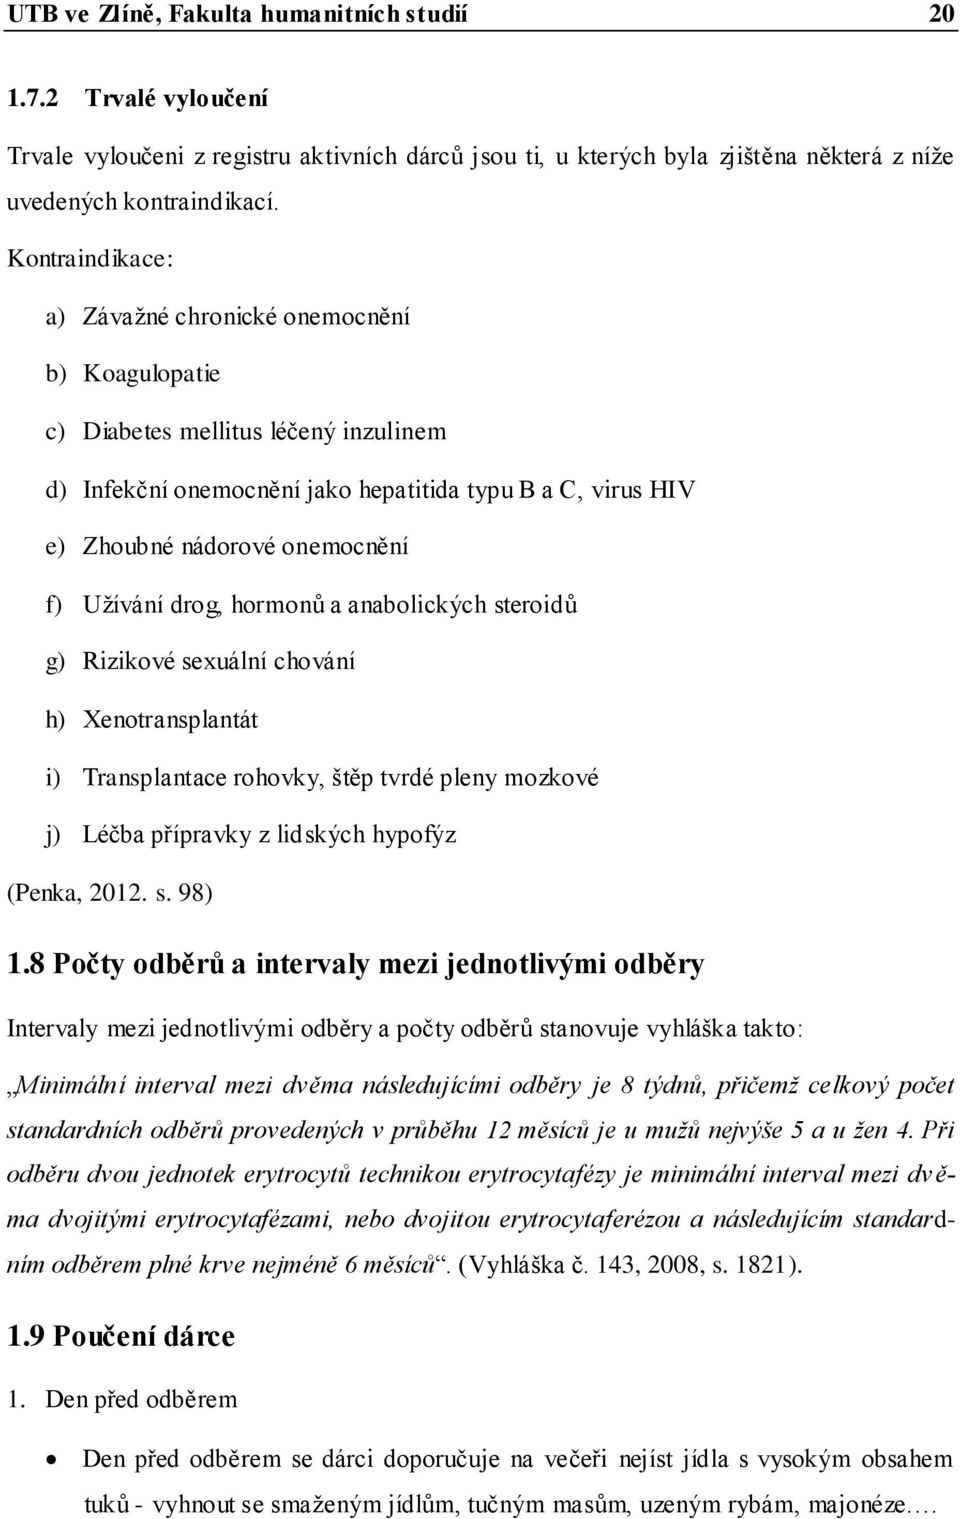 Uţívání drog, hormonů a anabolických steroidů g) Rizikové sexuální chování h) Xenotransplantát i) Transplantace rohovky, štěp tvrdé pleny mozkové j) Léčba přípravky z lidských hypofýz (Penka, 2012. s. 98) 1.